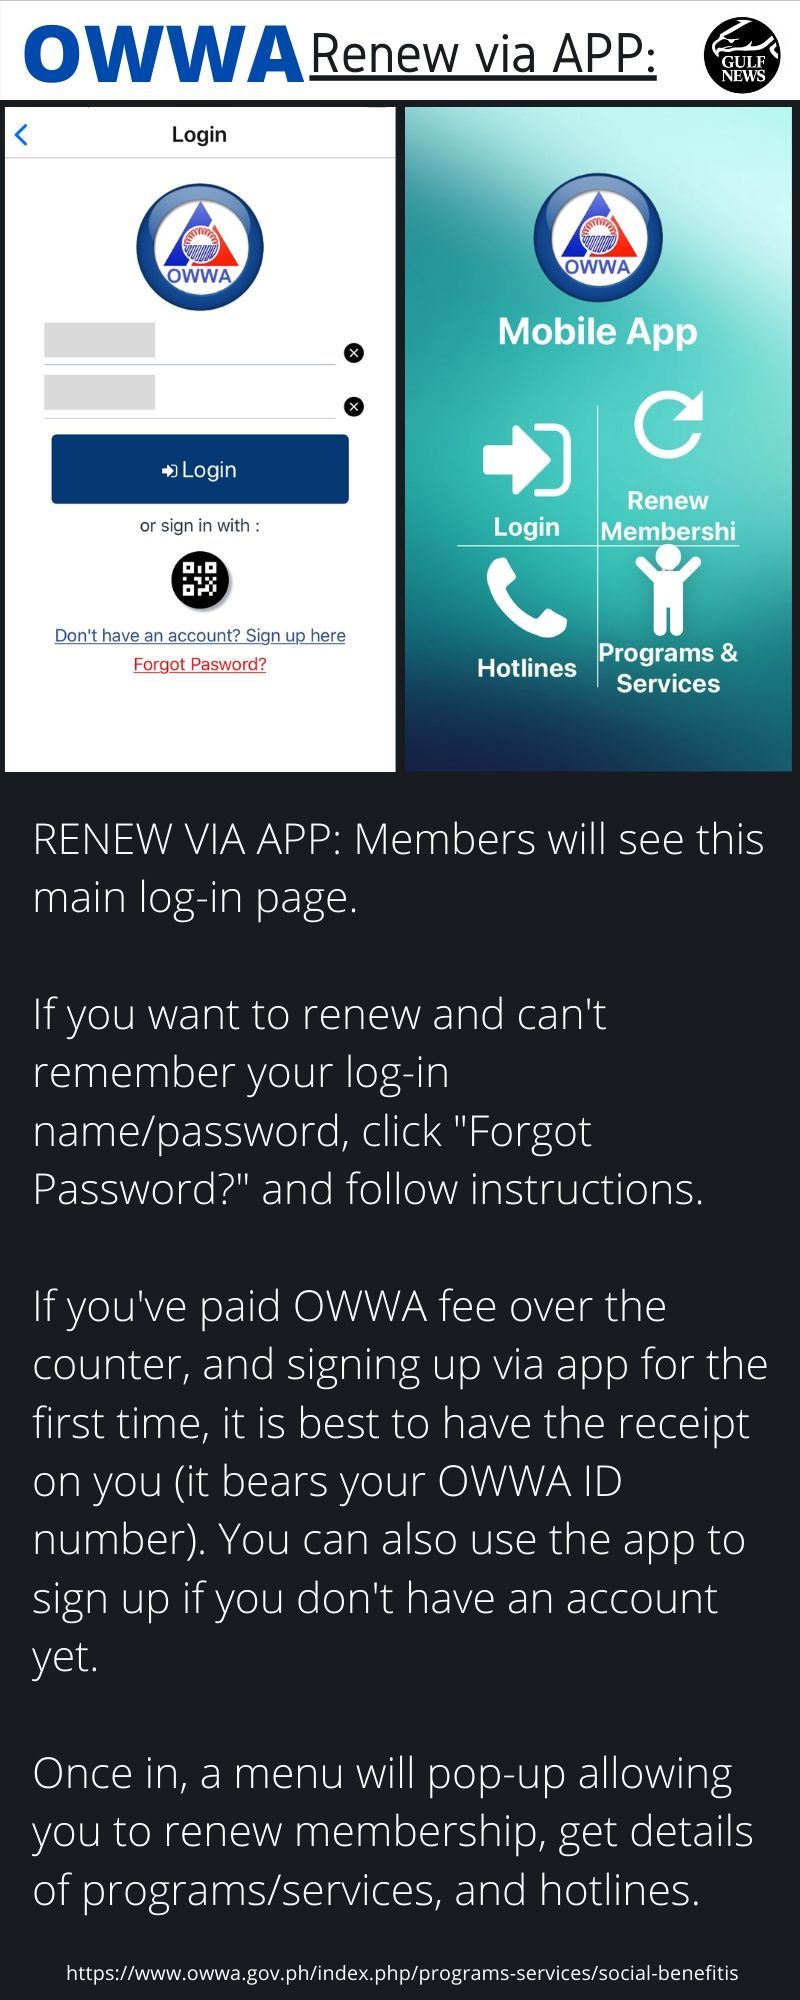 OFW renew OWWA app